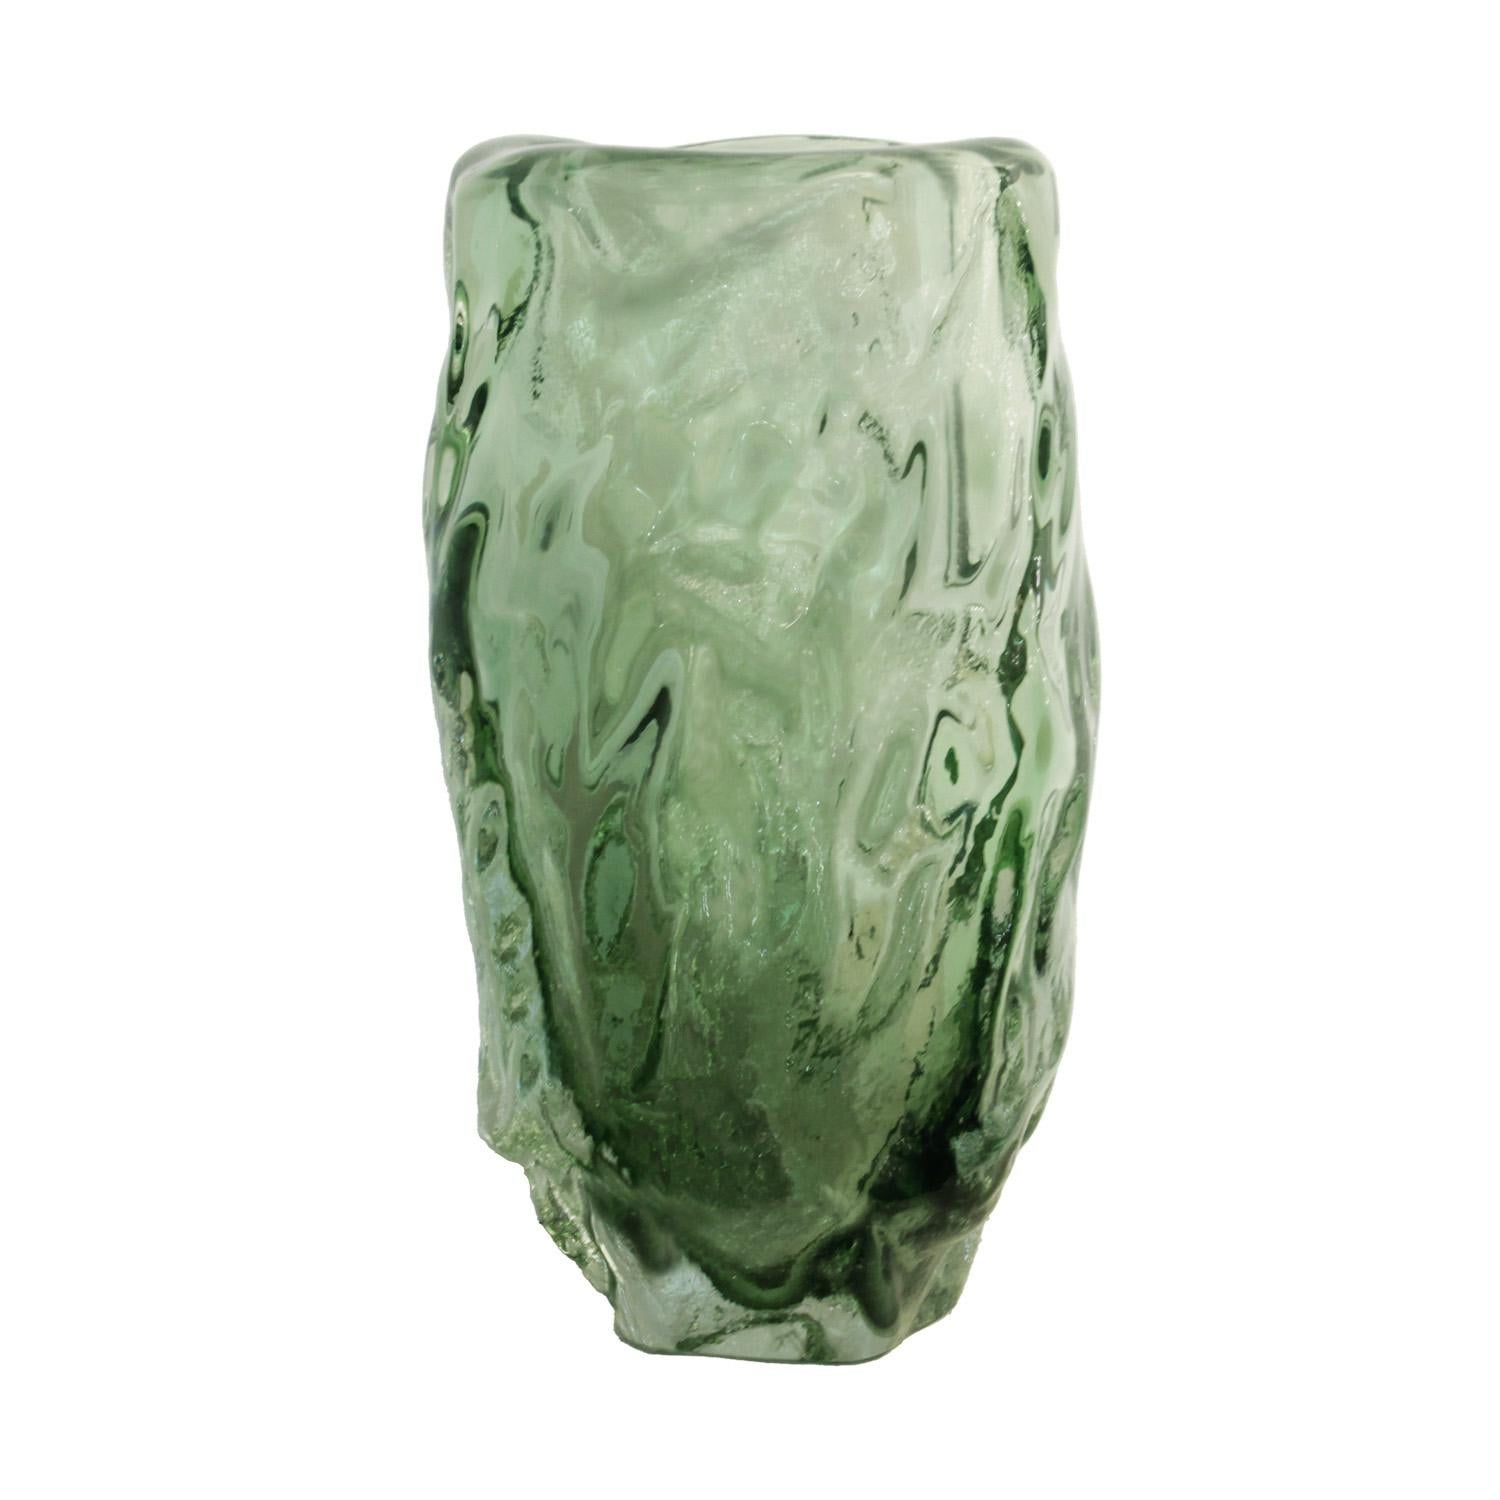 Vase en verre de Murano sommerso vert, fabriqué à la main, inspiré par les œuvres de l'artiste abstrait italien Alberto Burri. Italie 2023